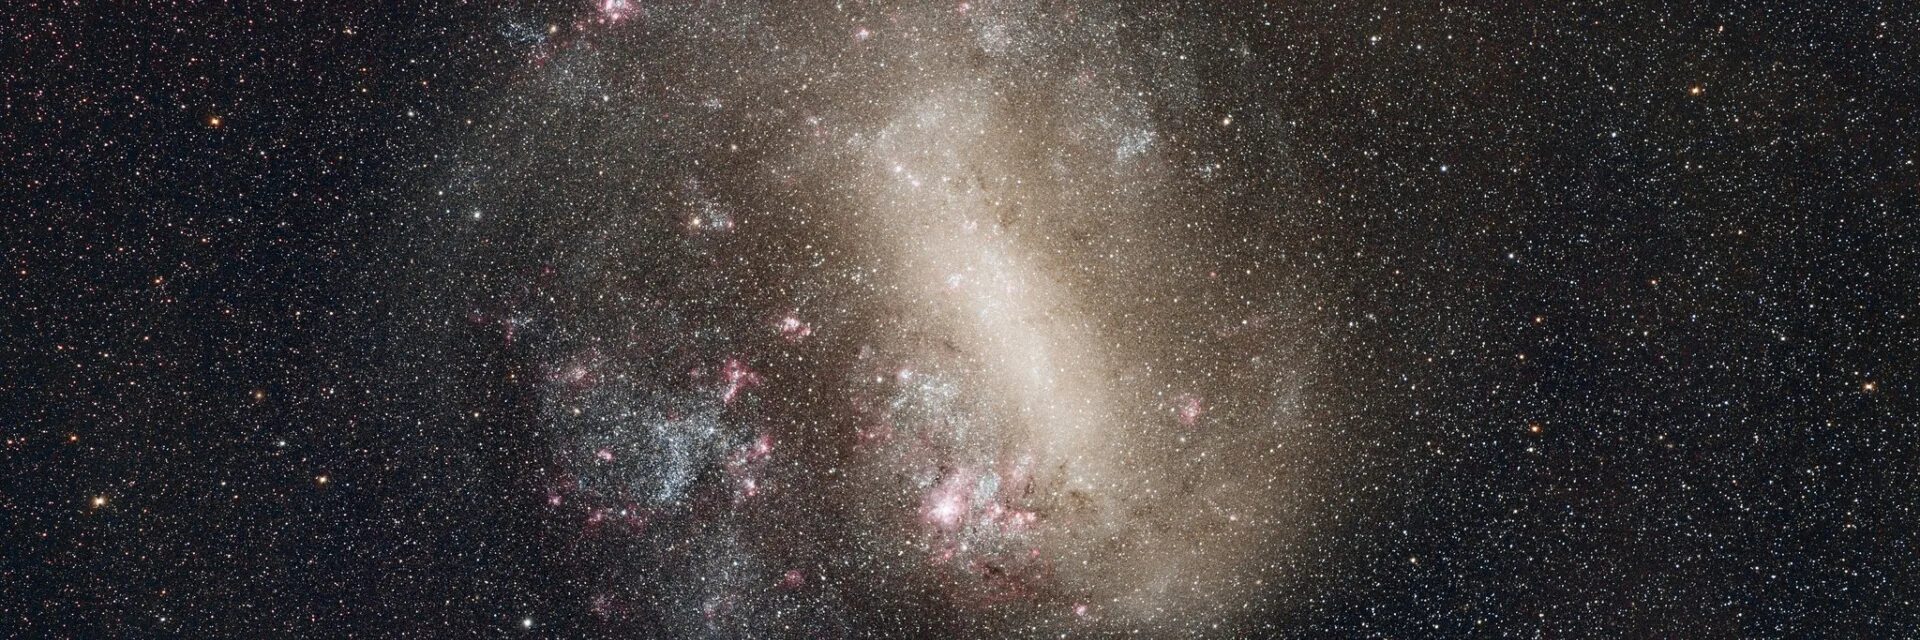 Магеллановы облака песни. Малое Магелланово облако Галактика Млечный путь. Карликовая BCG-Галактика. Большое Магеллановое облако. Космос мало звезд.